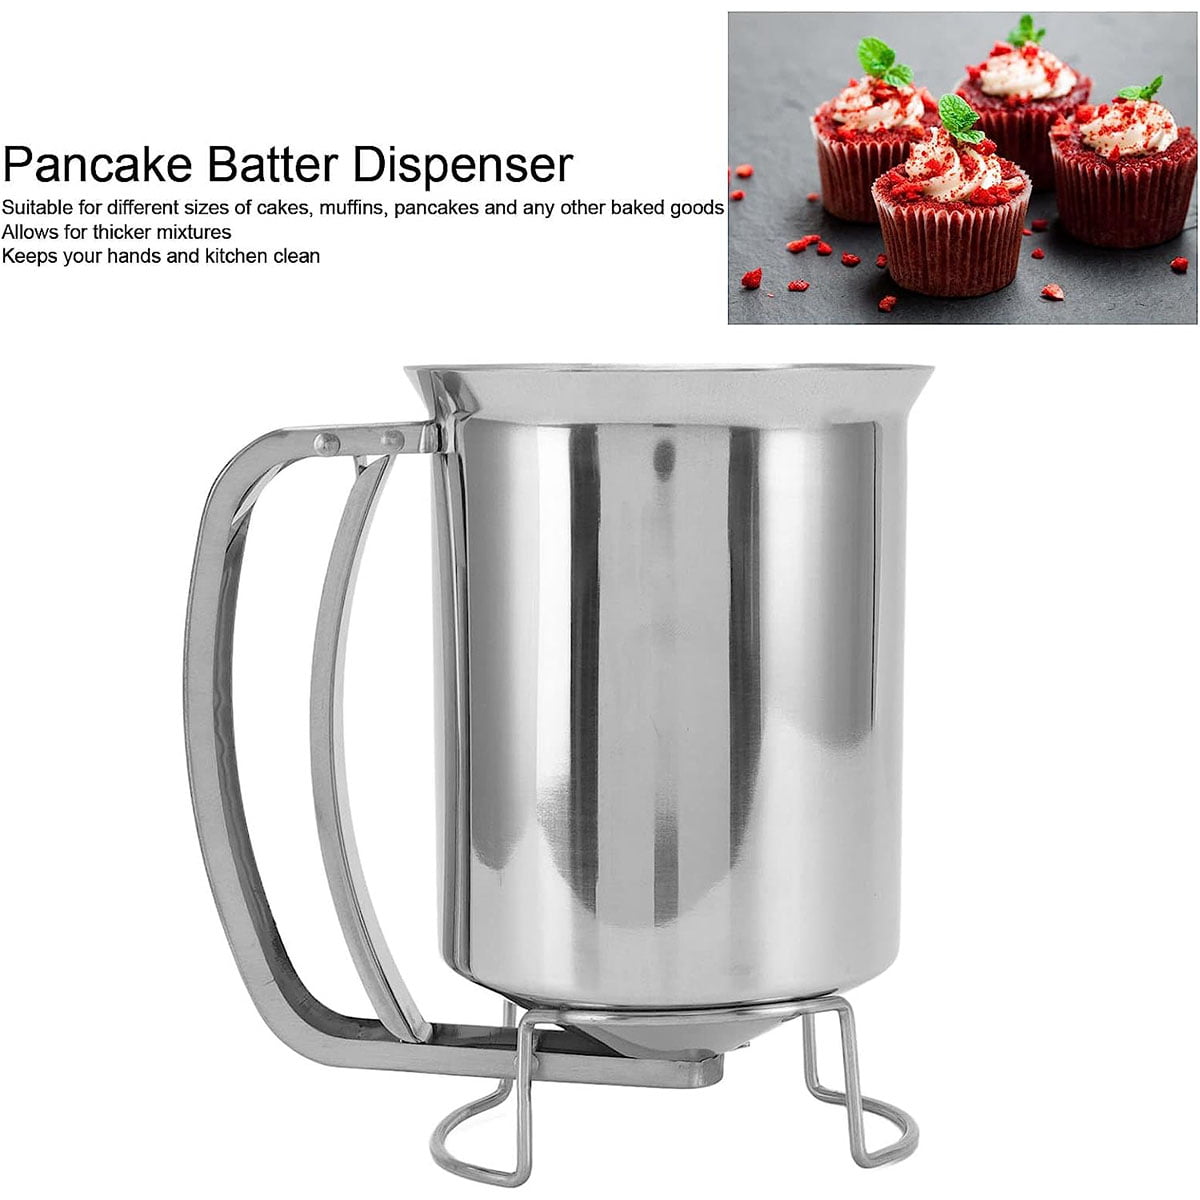 Pancake And Cupcake Batter Dispenser –